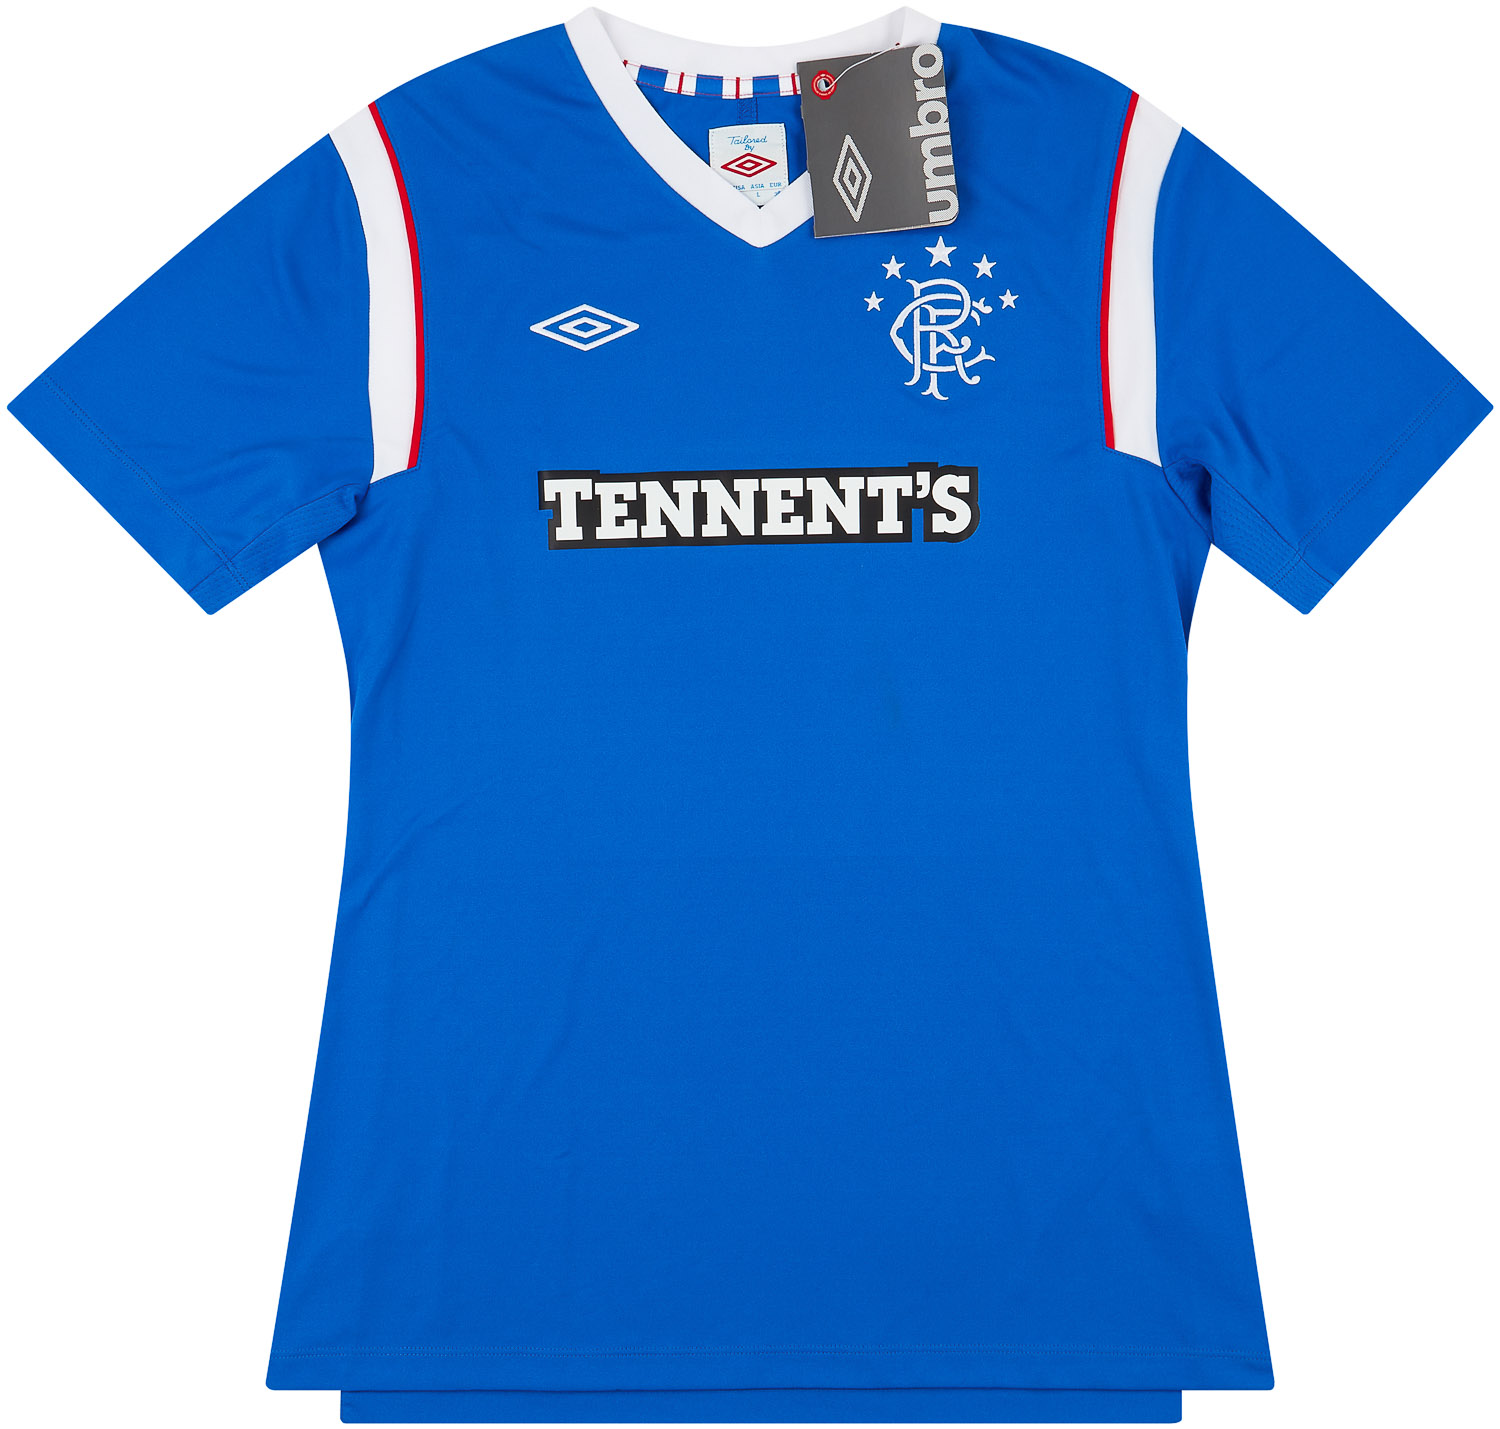 2011-12 Rangers Home Shirt Women's ()